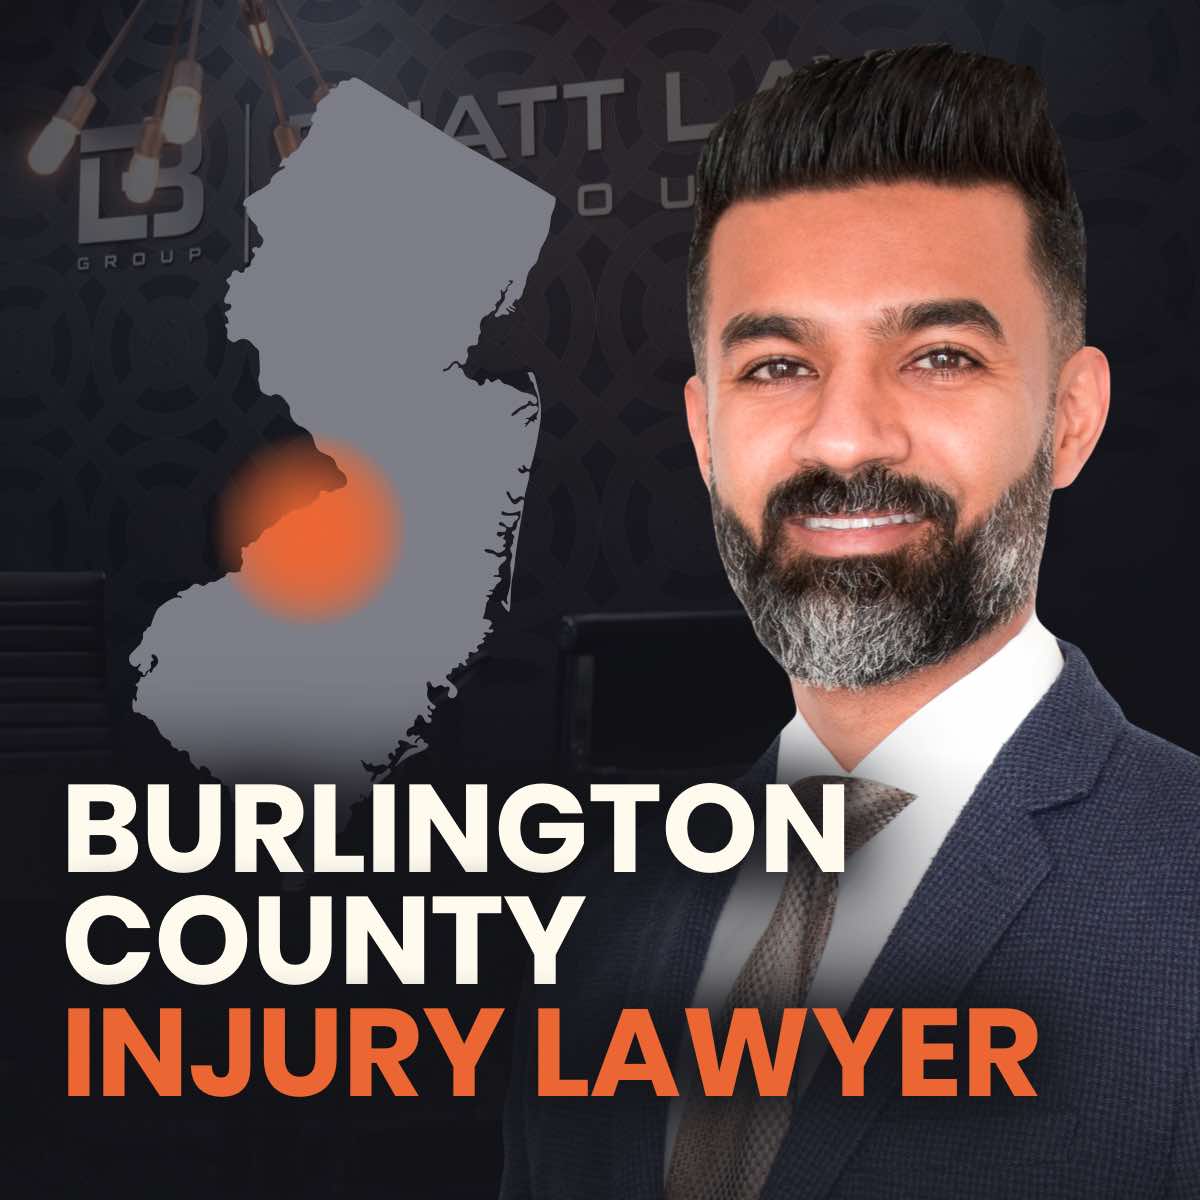 Salem County Injury Lawyer